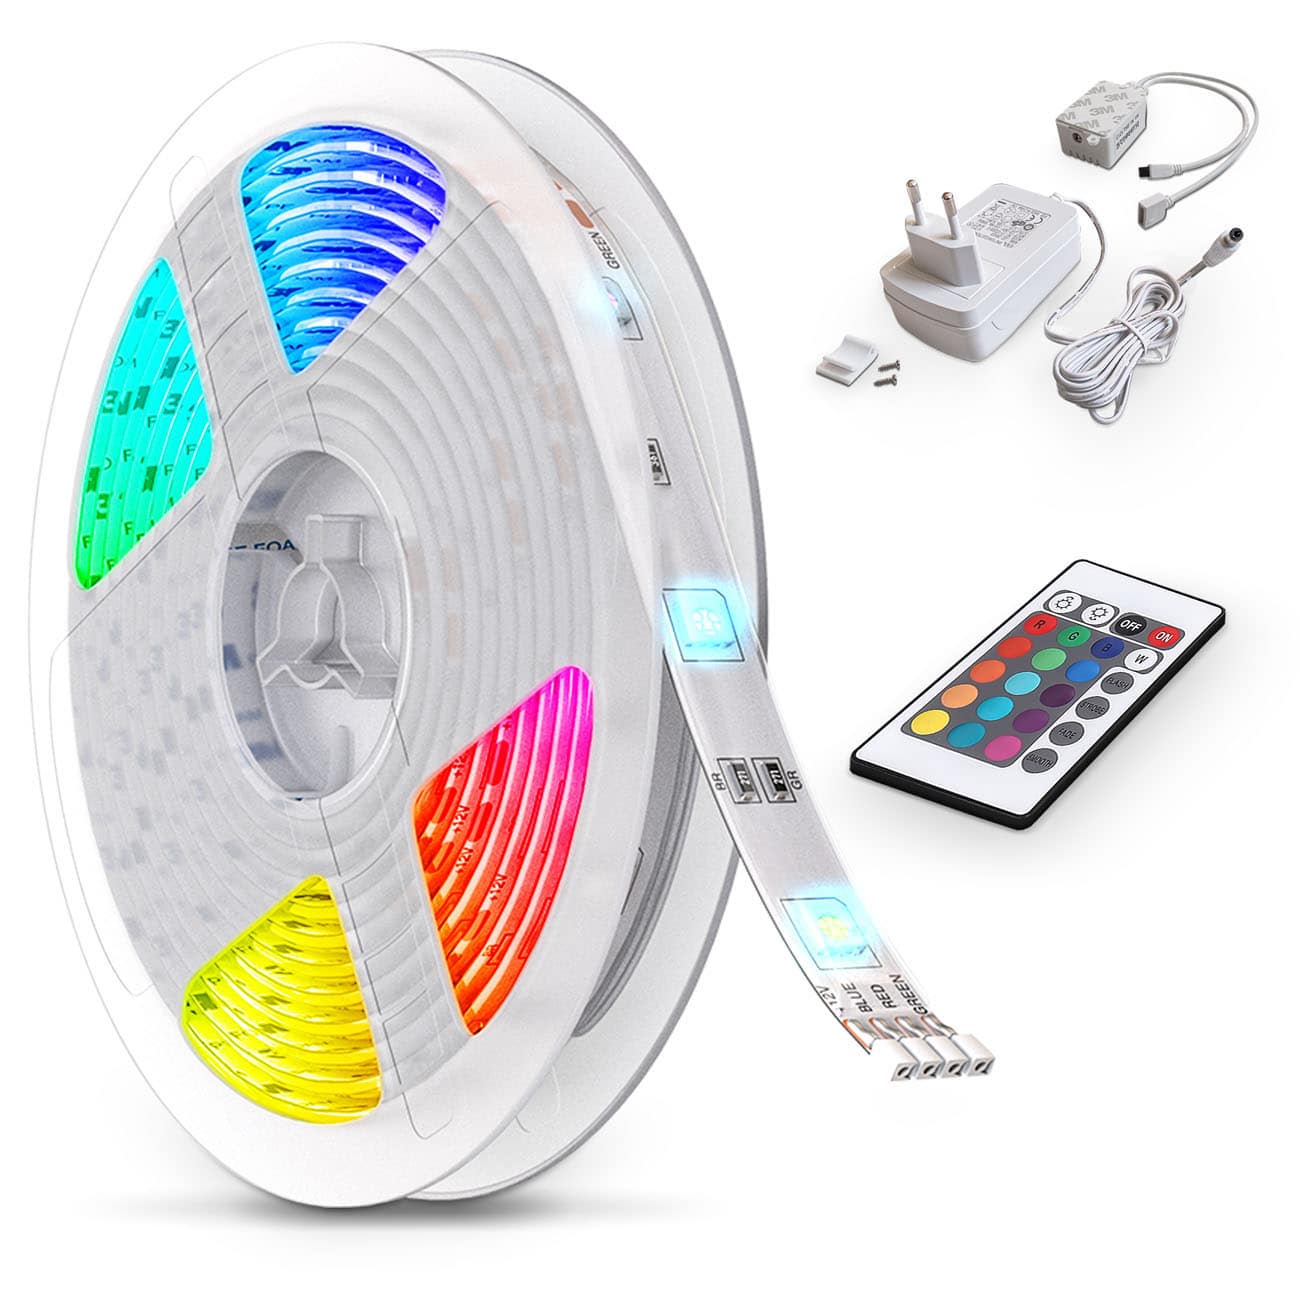 LED Licht-Band 230V - 5 Meter - RGB Stripe dimmbar 24W warmweiß inkl Fernbedienung 150 LEDs flexibel kürzbar selbstklebend | weiß - 1